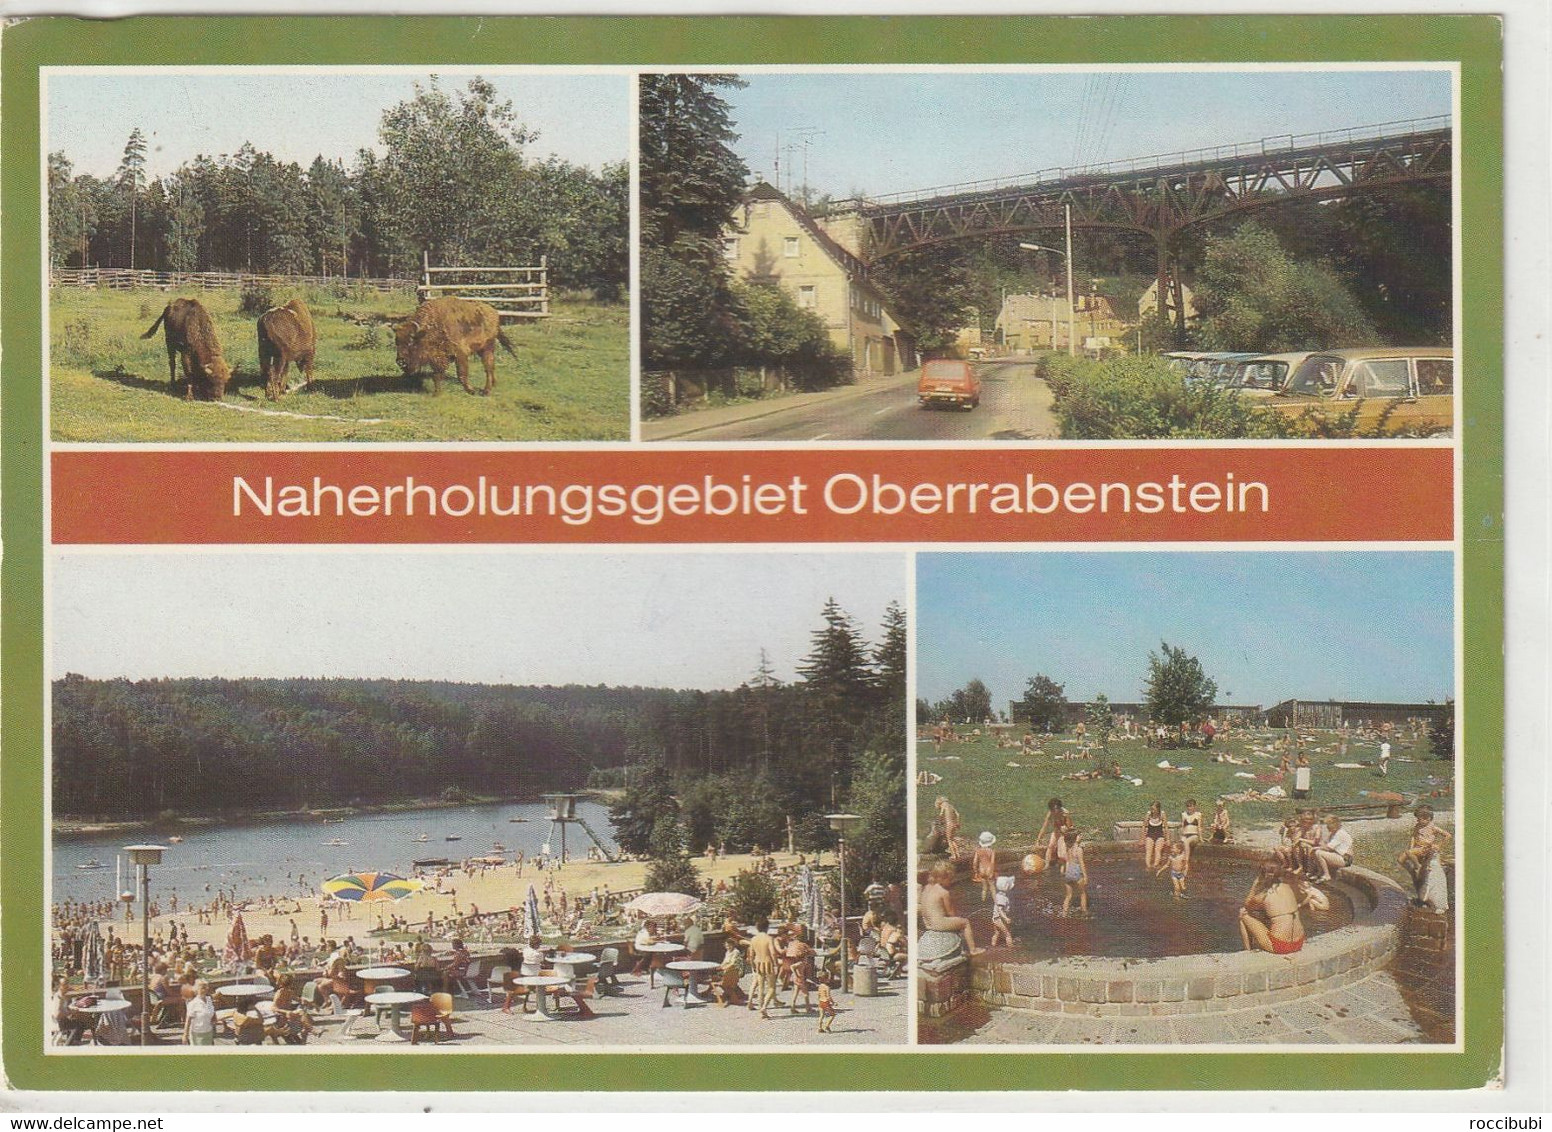 Oberrabenstein, Karl-Marx-Stadt, Sachsen - Chemnitz (Karl-Marx-Stadt 1953-1990)